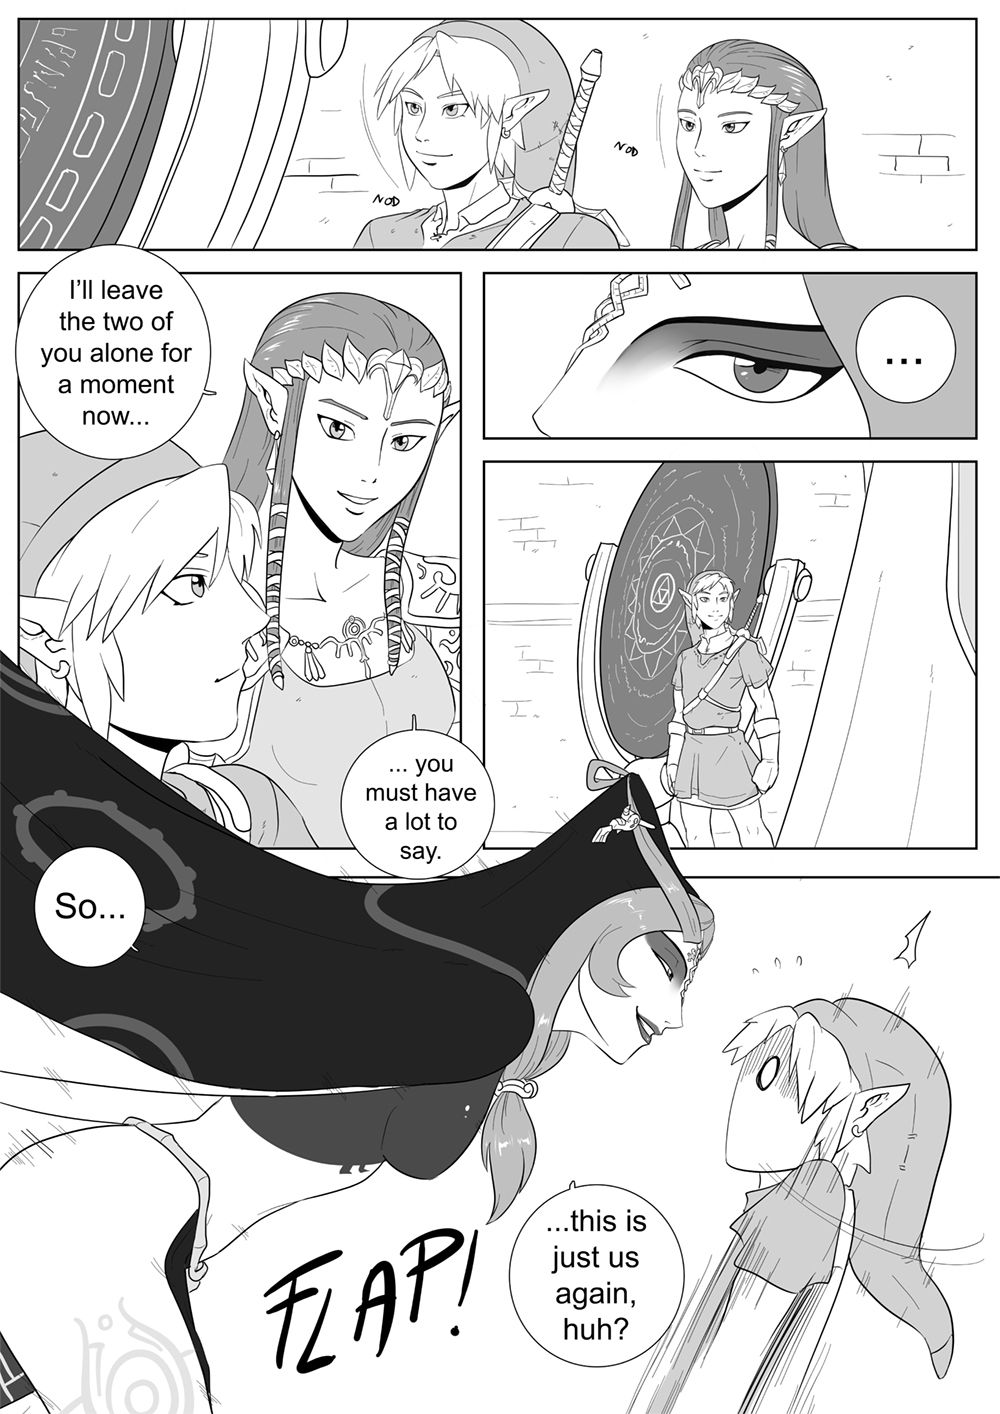 [oo_sebastian_oo] A Link Between Girl 002 : Queen Midna [ Ongoing ! ] 3